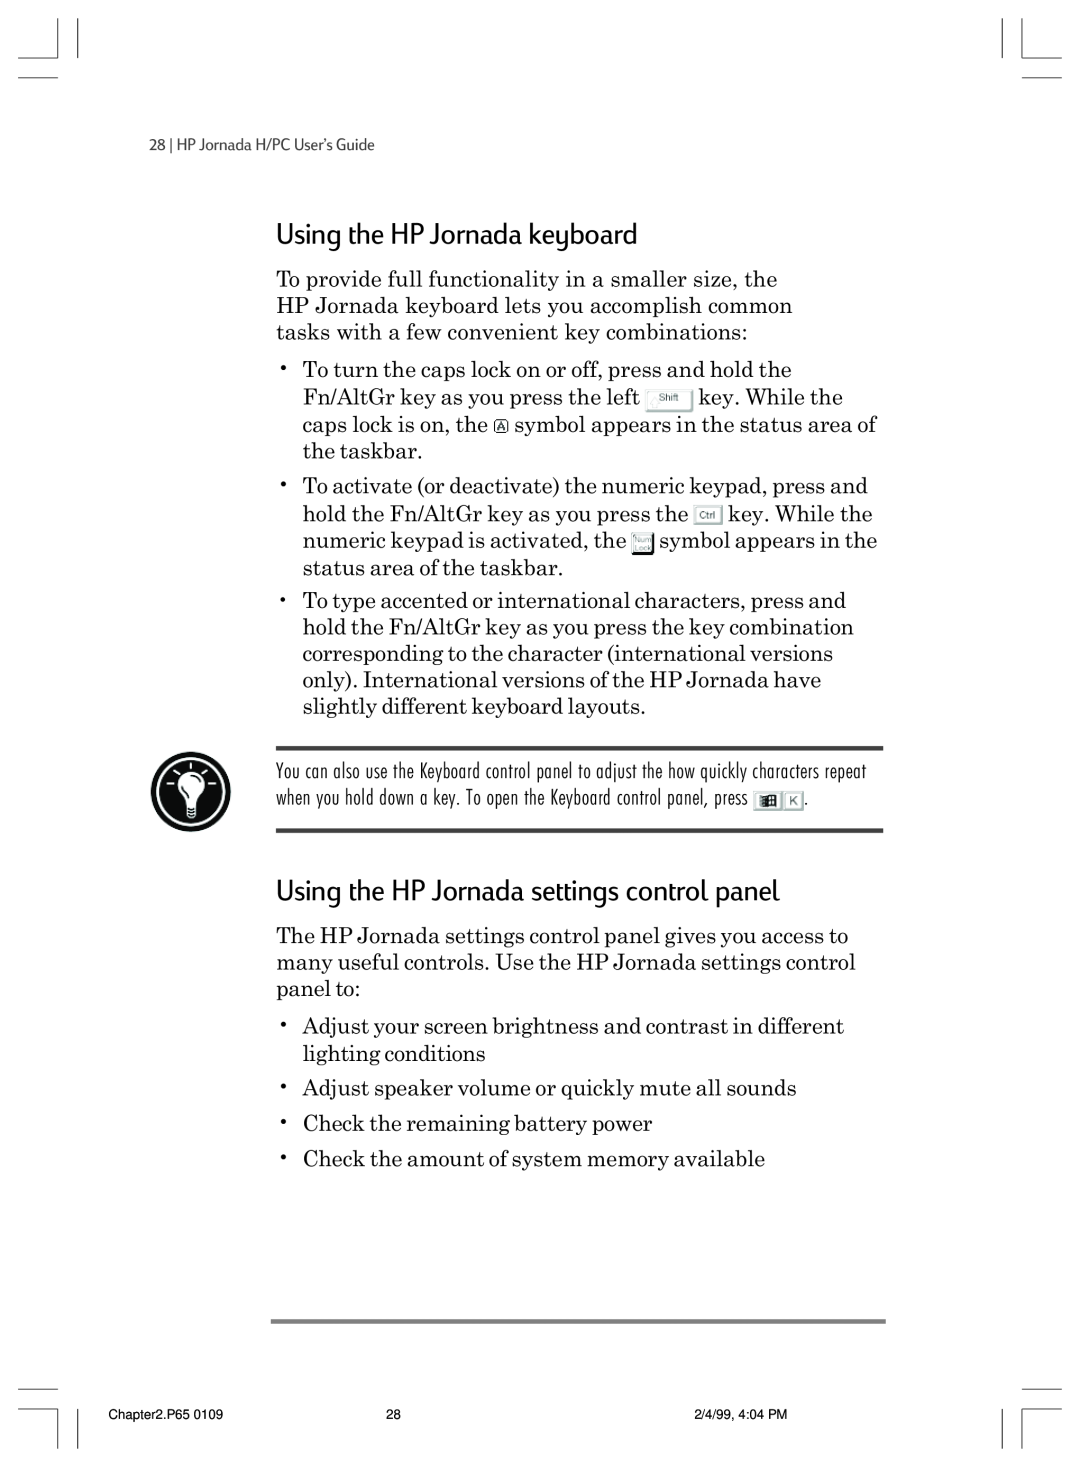 HP 820 E manual Using the HP Jornada keyboard, Using the HP Jornada settings control panel 